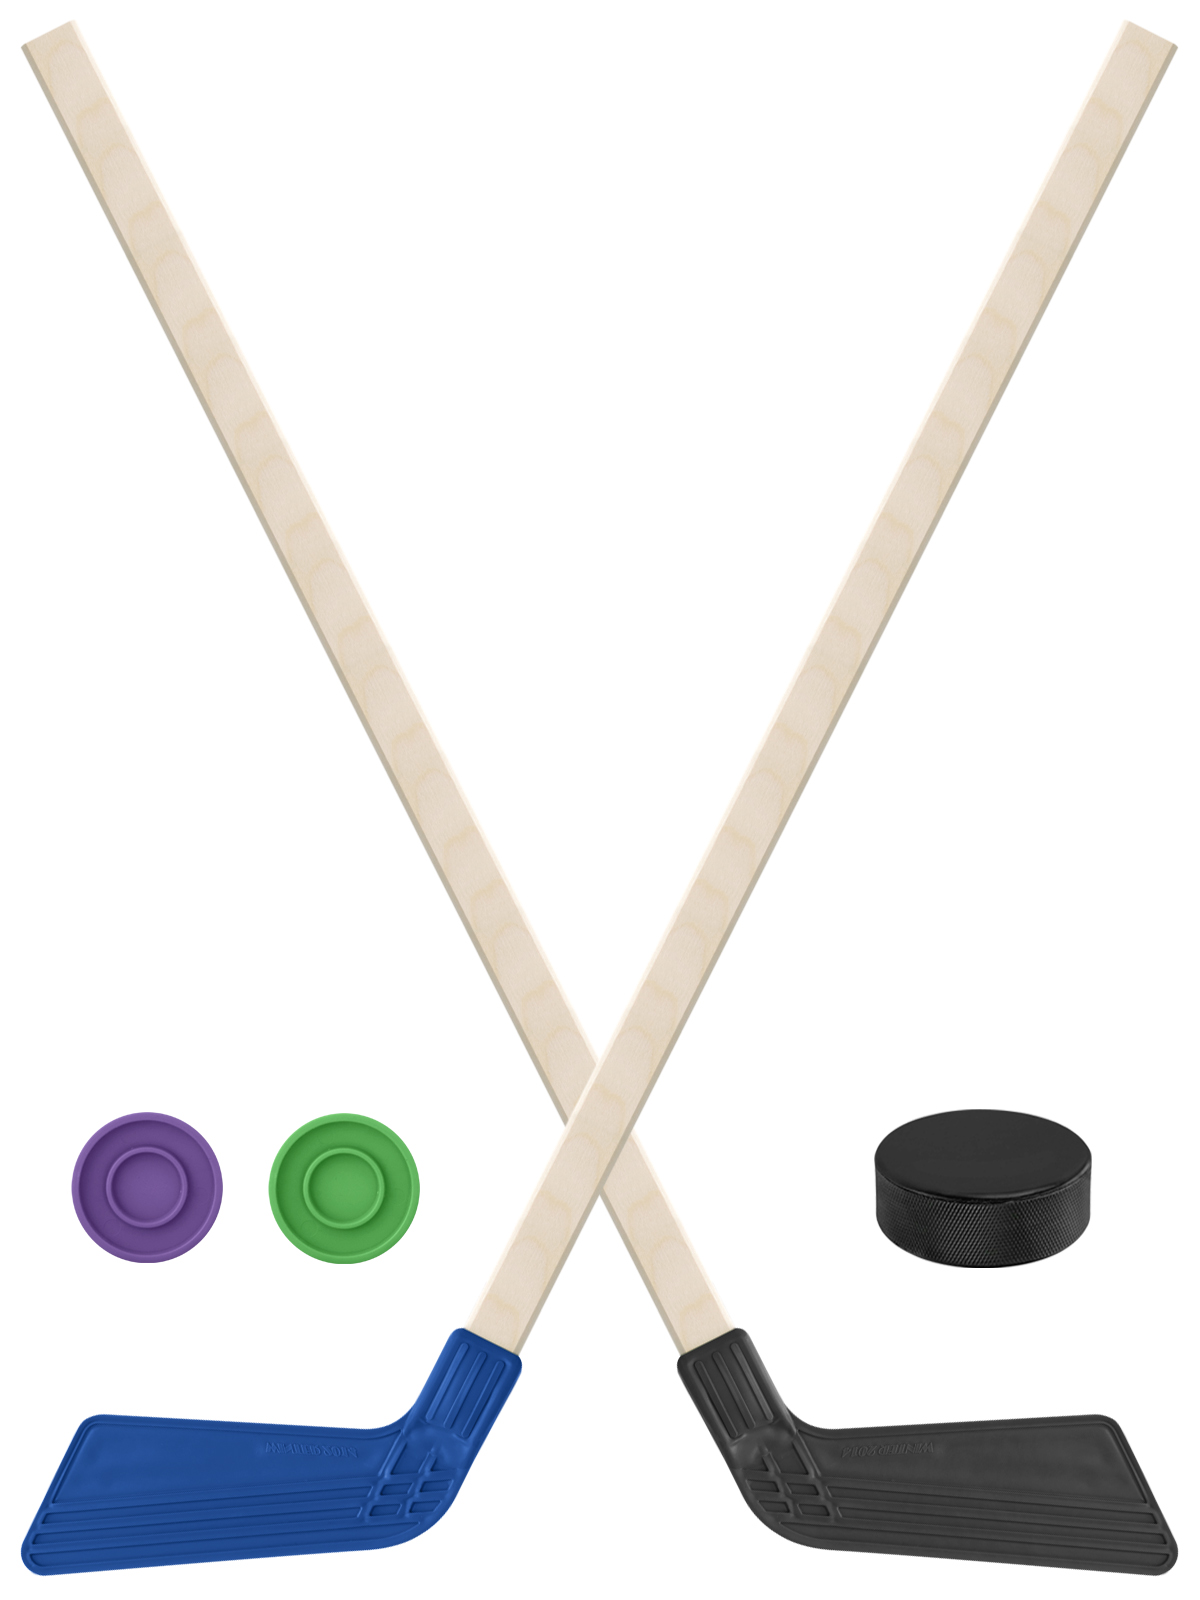 Детский хоккейный набор Задира-плюс Клюшка хоккейная 2шт(син,чёрн)+2шайбы+Шайба 75 мм клюшка флорбольная acito apache 33 yellow 80 round левый